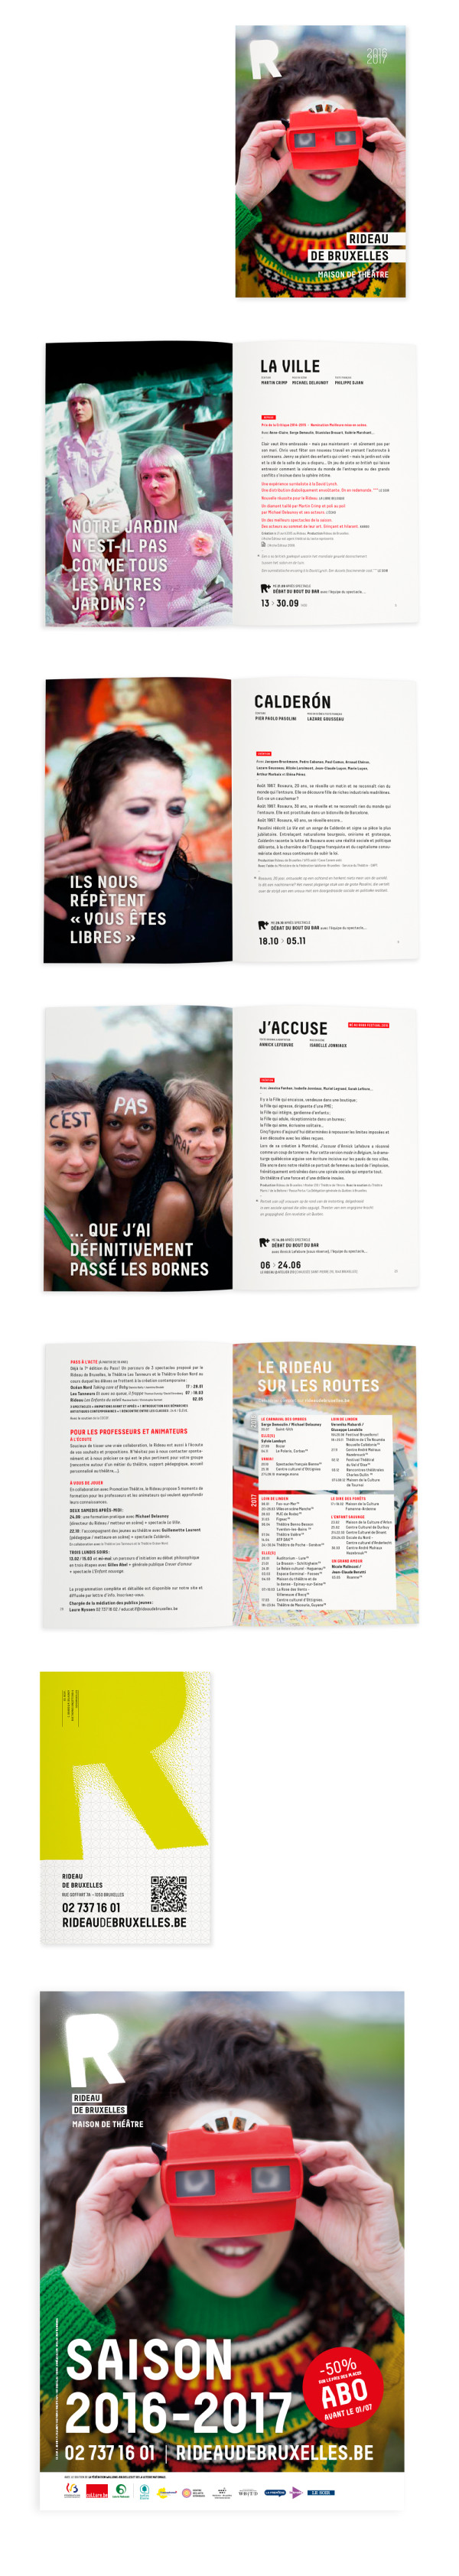 Rideau de Bruxelles<em> — Brochure Saison 2016-2017</em>